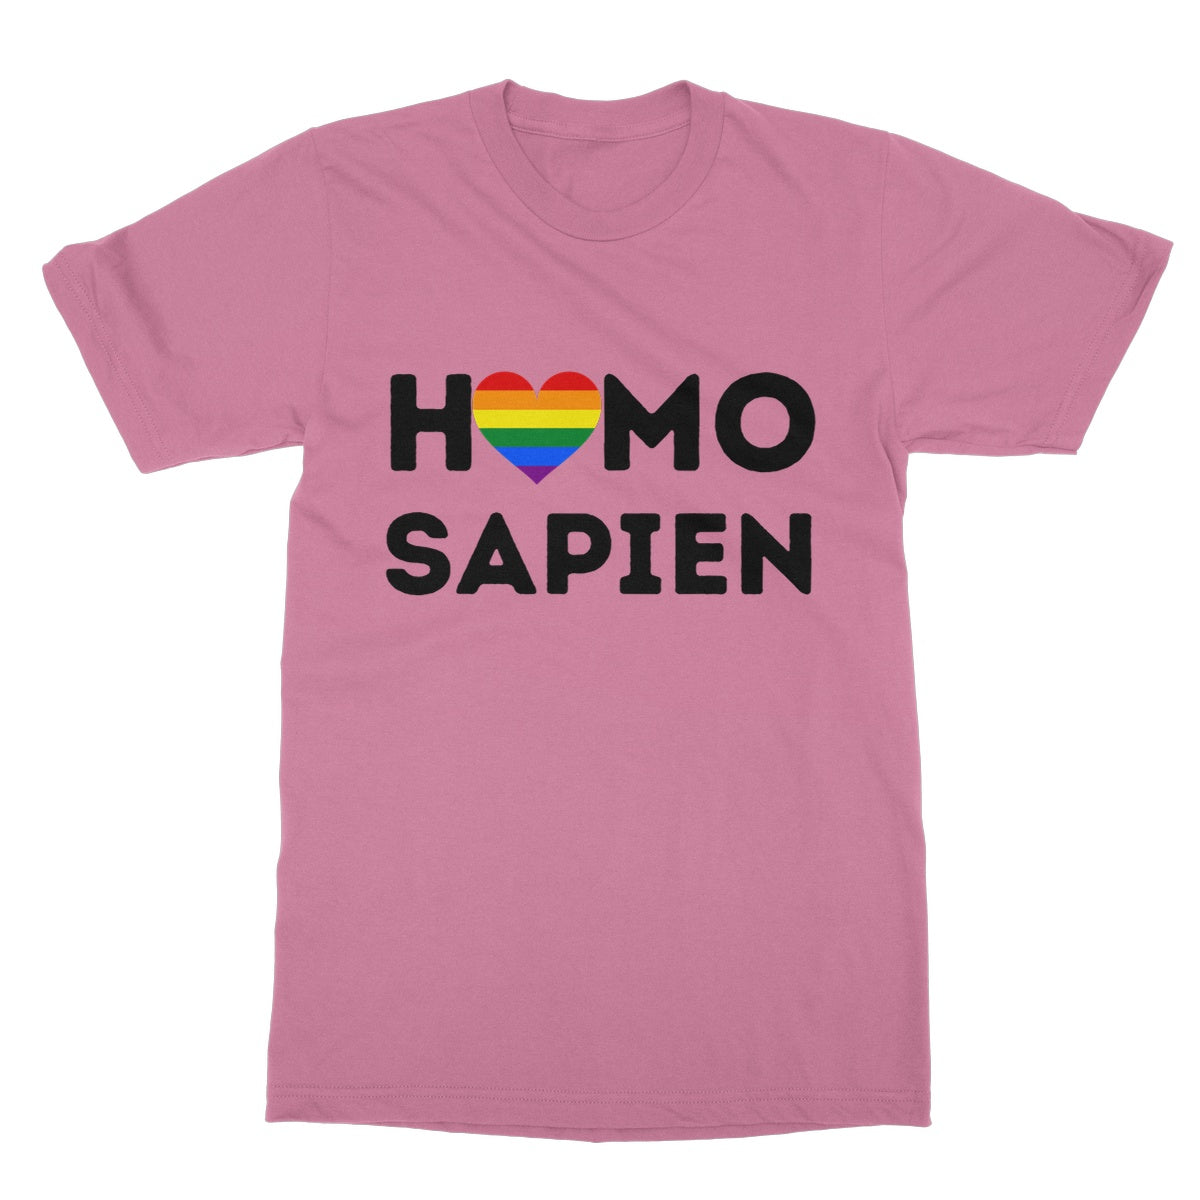 homo sapien t shirt pink